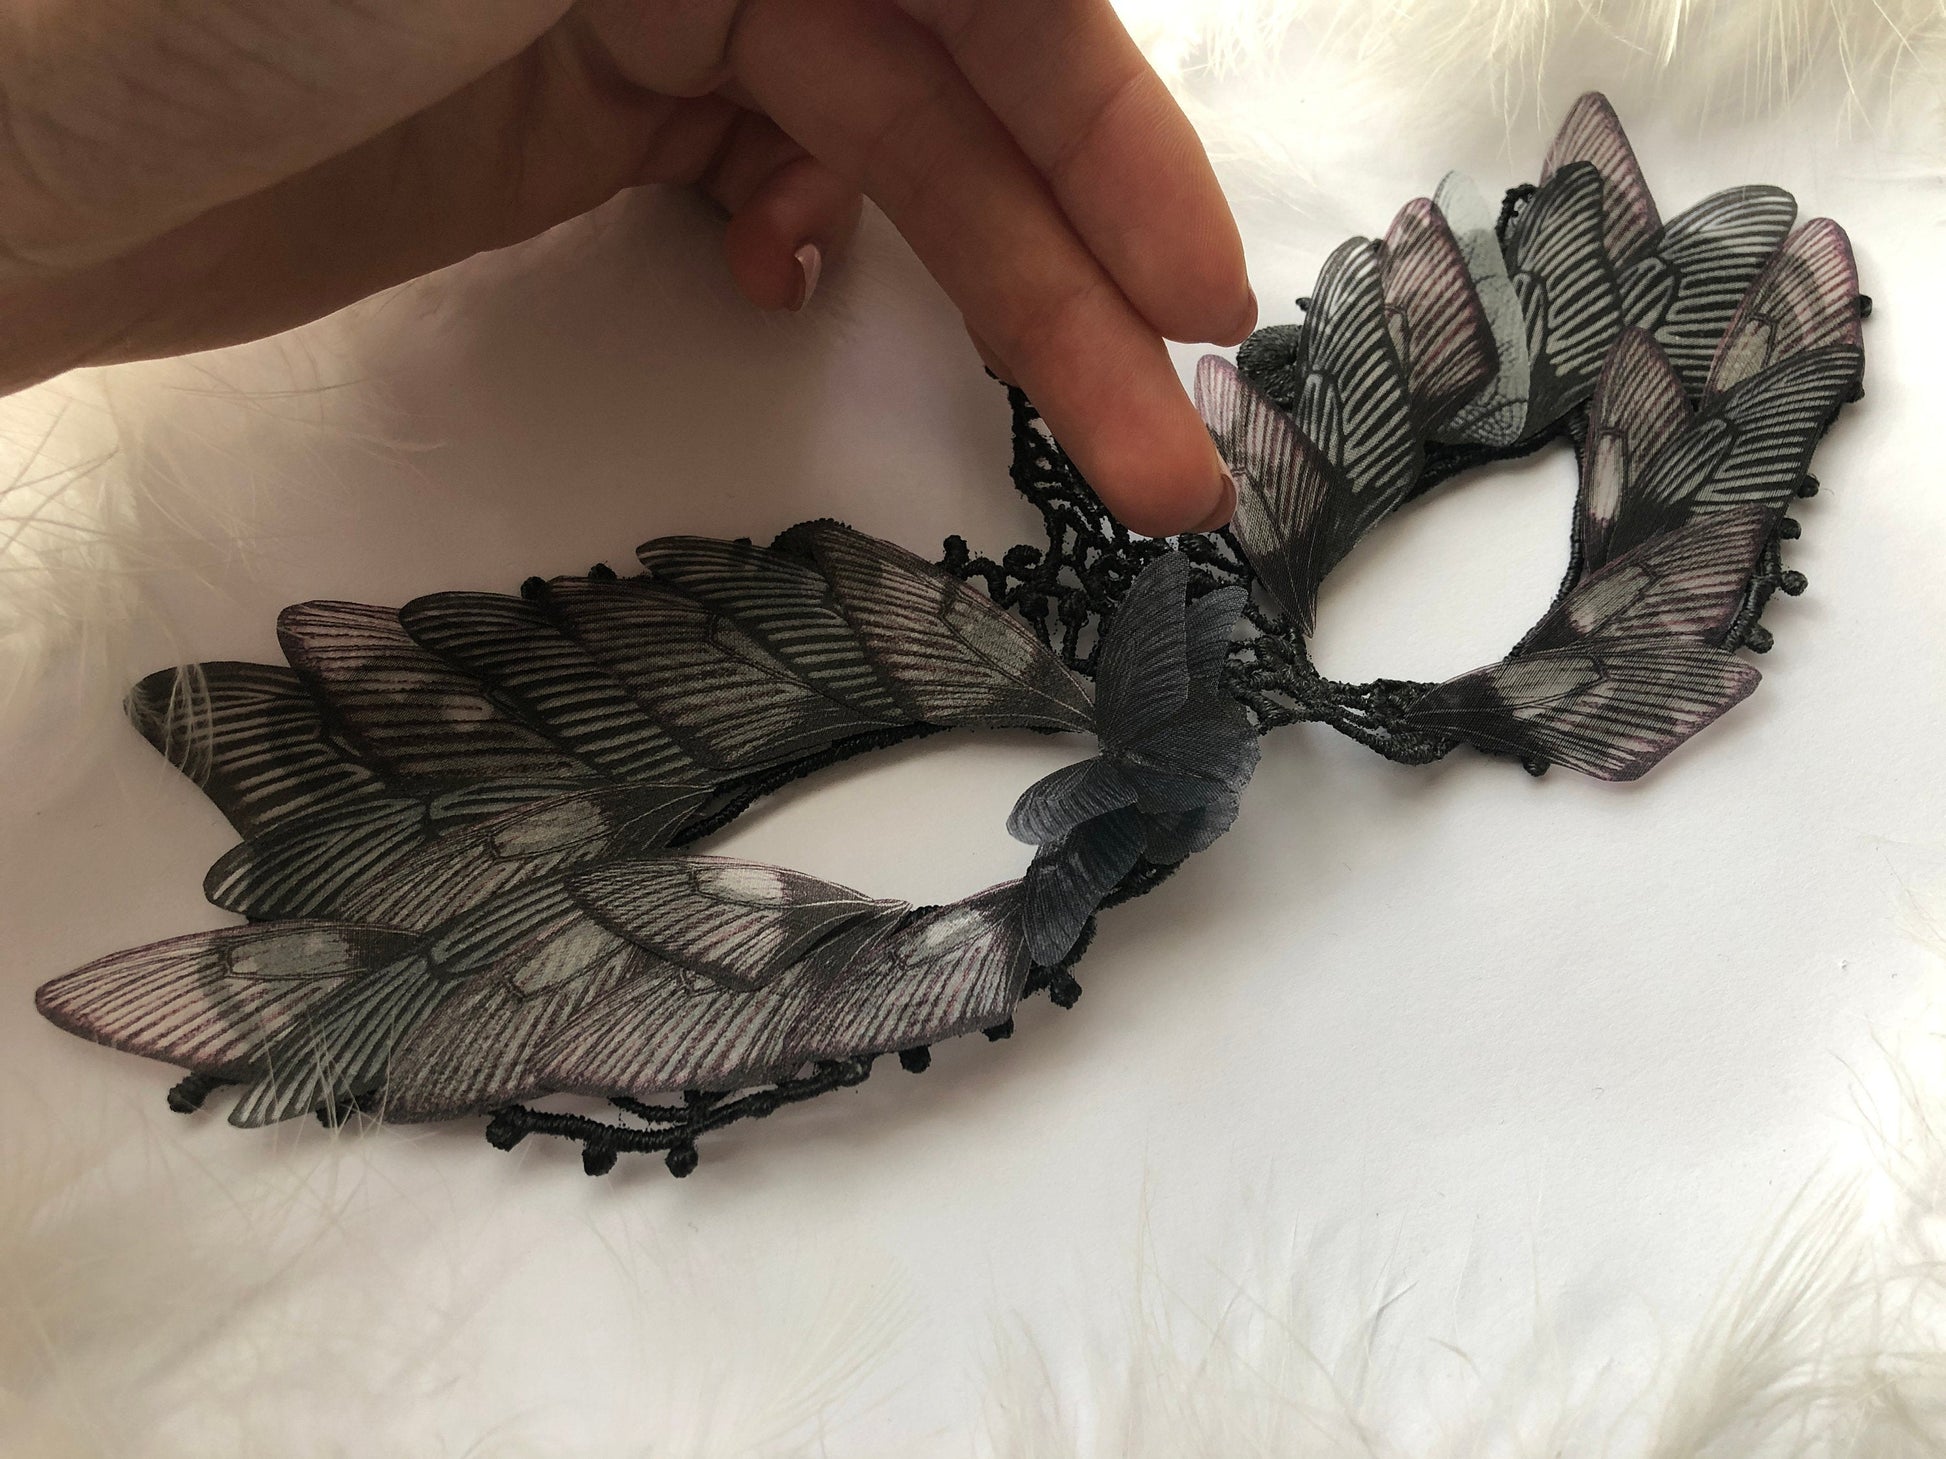 Mask of Silk Butterflies "Maleficent" - Silk Butterflies